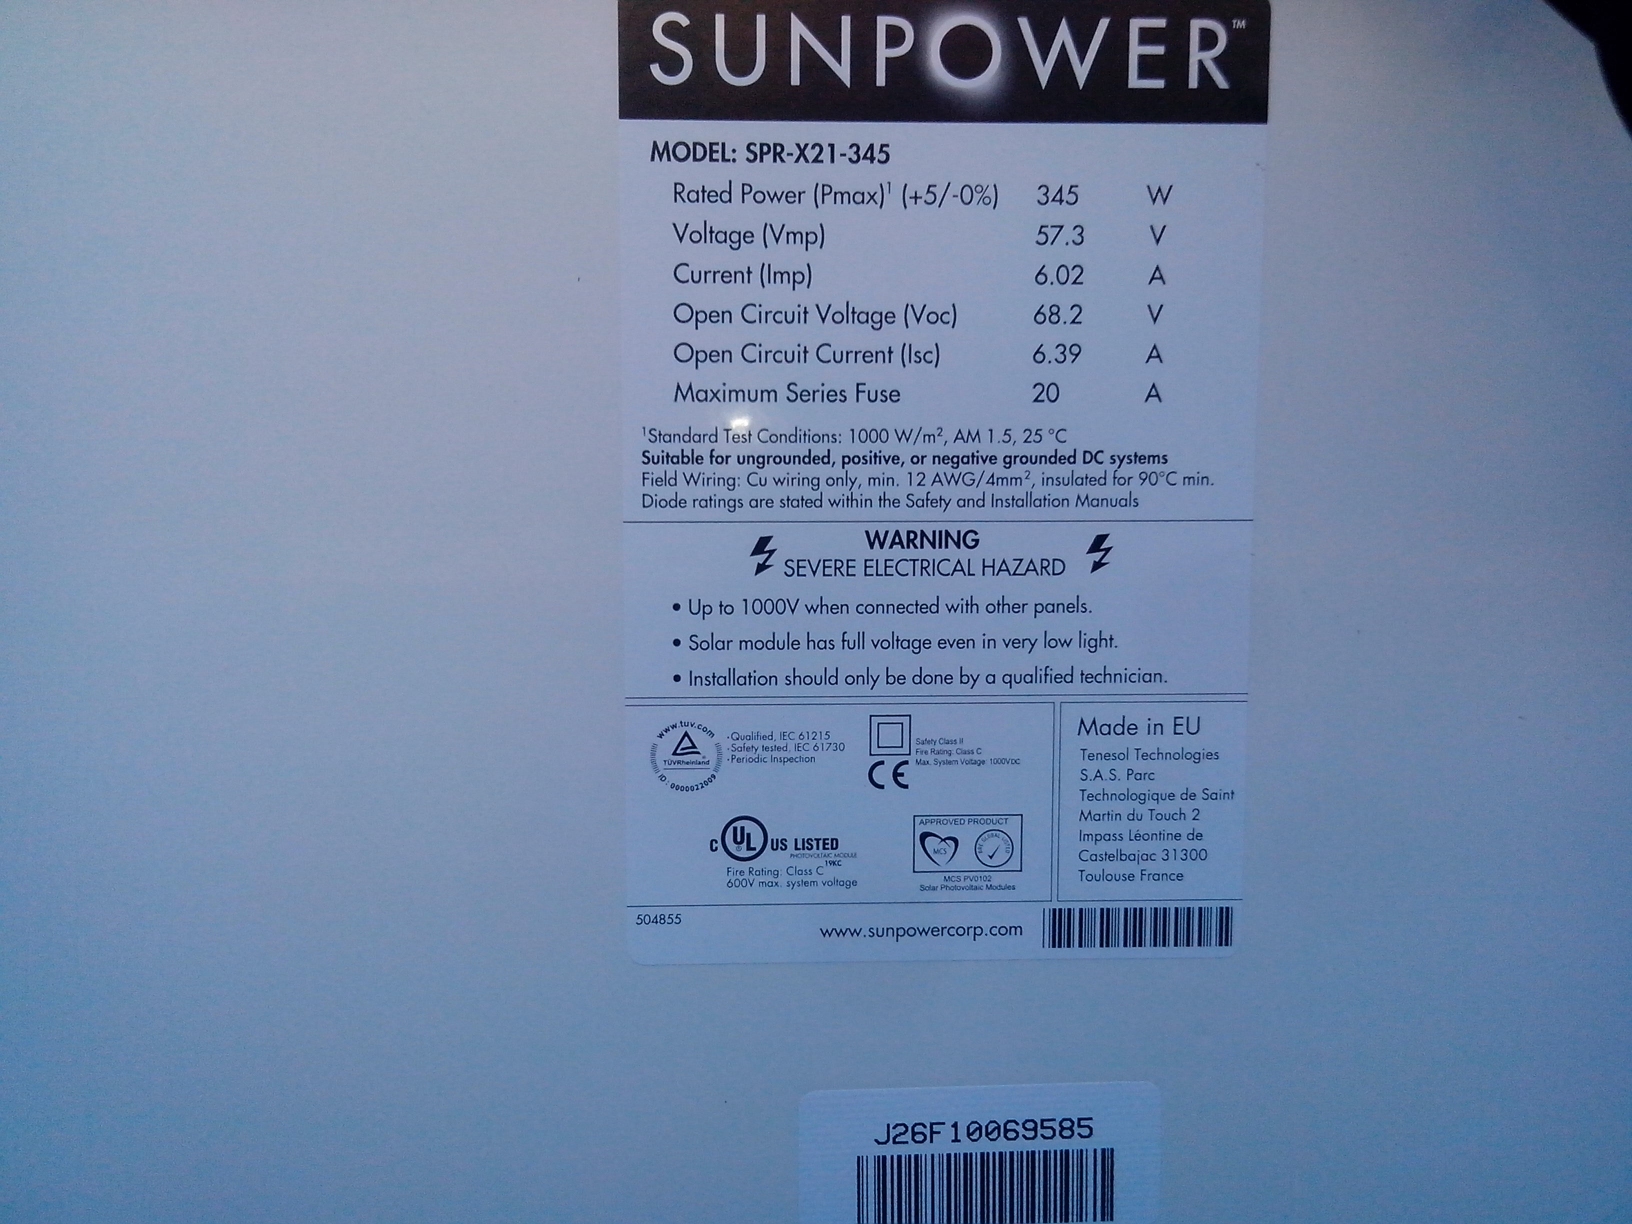 Impianto Fotovoltaico SunPower Lightland X21 Ferrara Emilia Romagna Retro Label